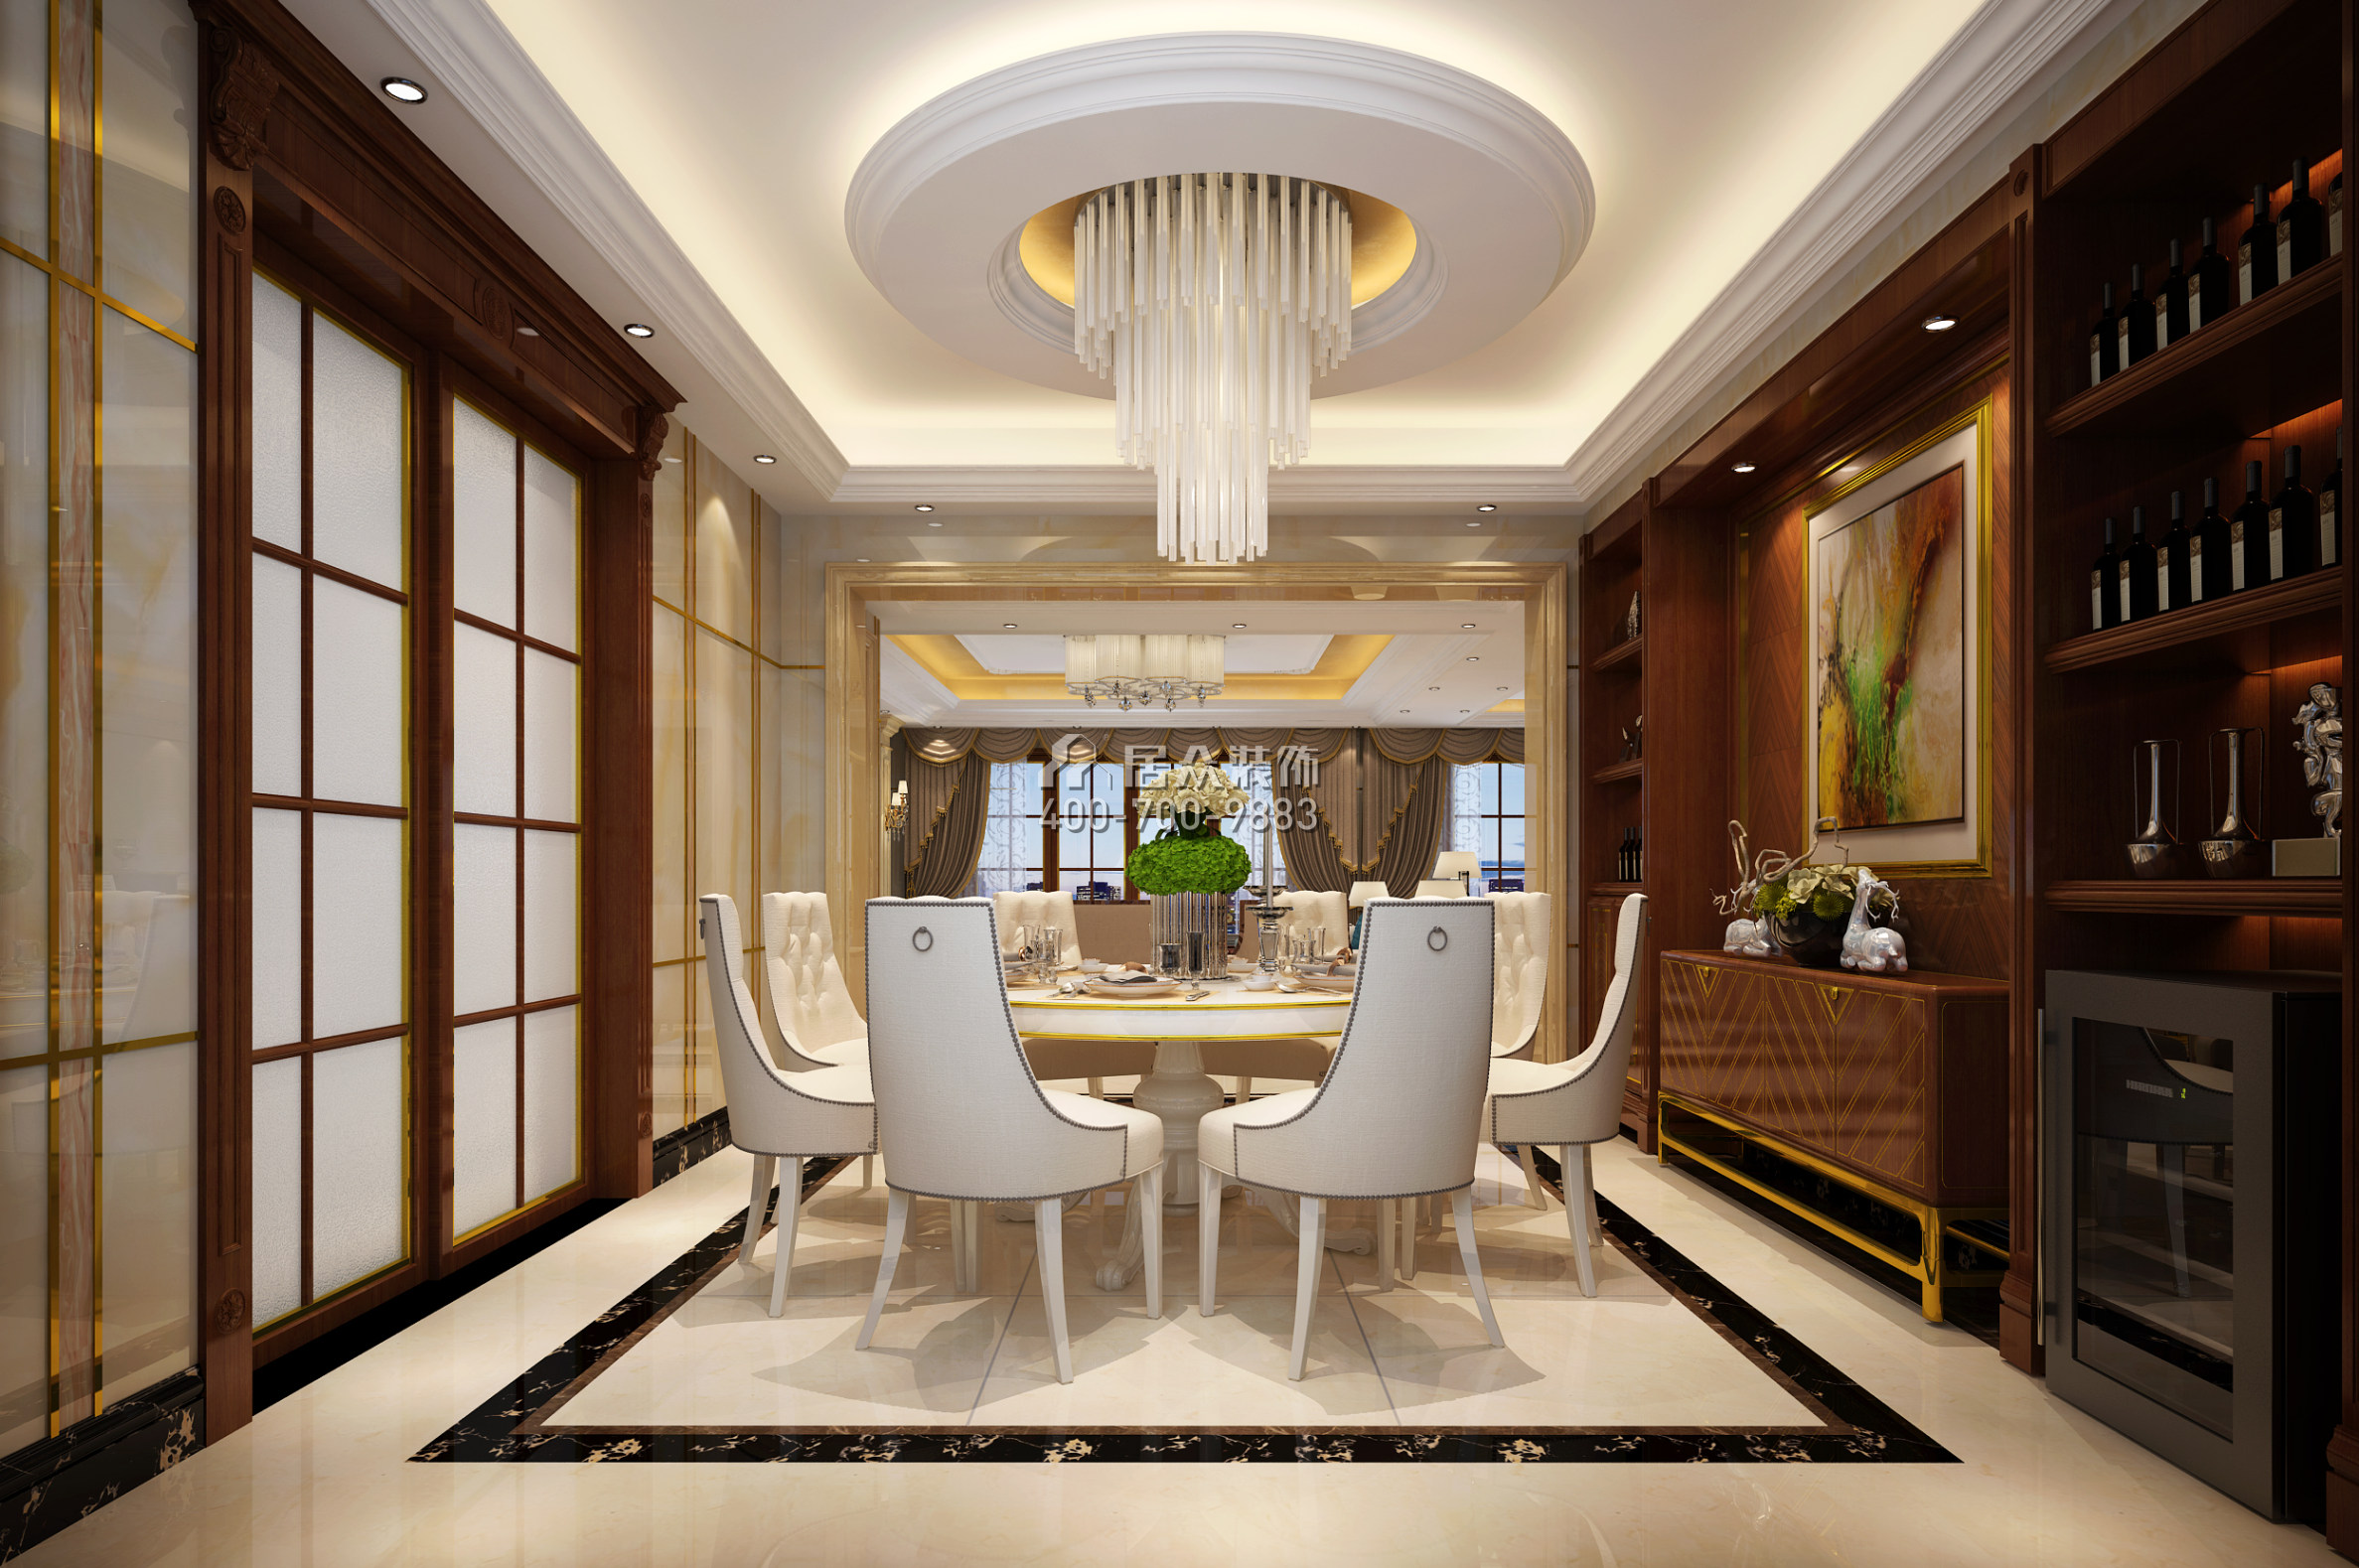 保利东江首府290平方米混搭风格平层户型餐厅装修效果图